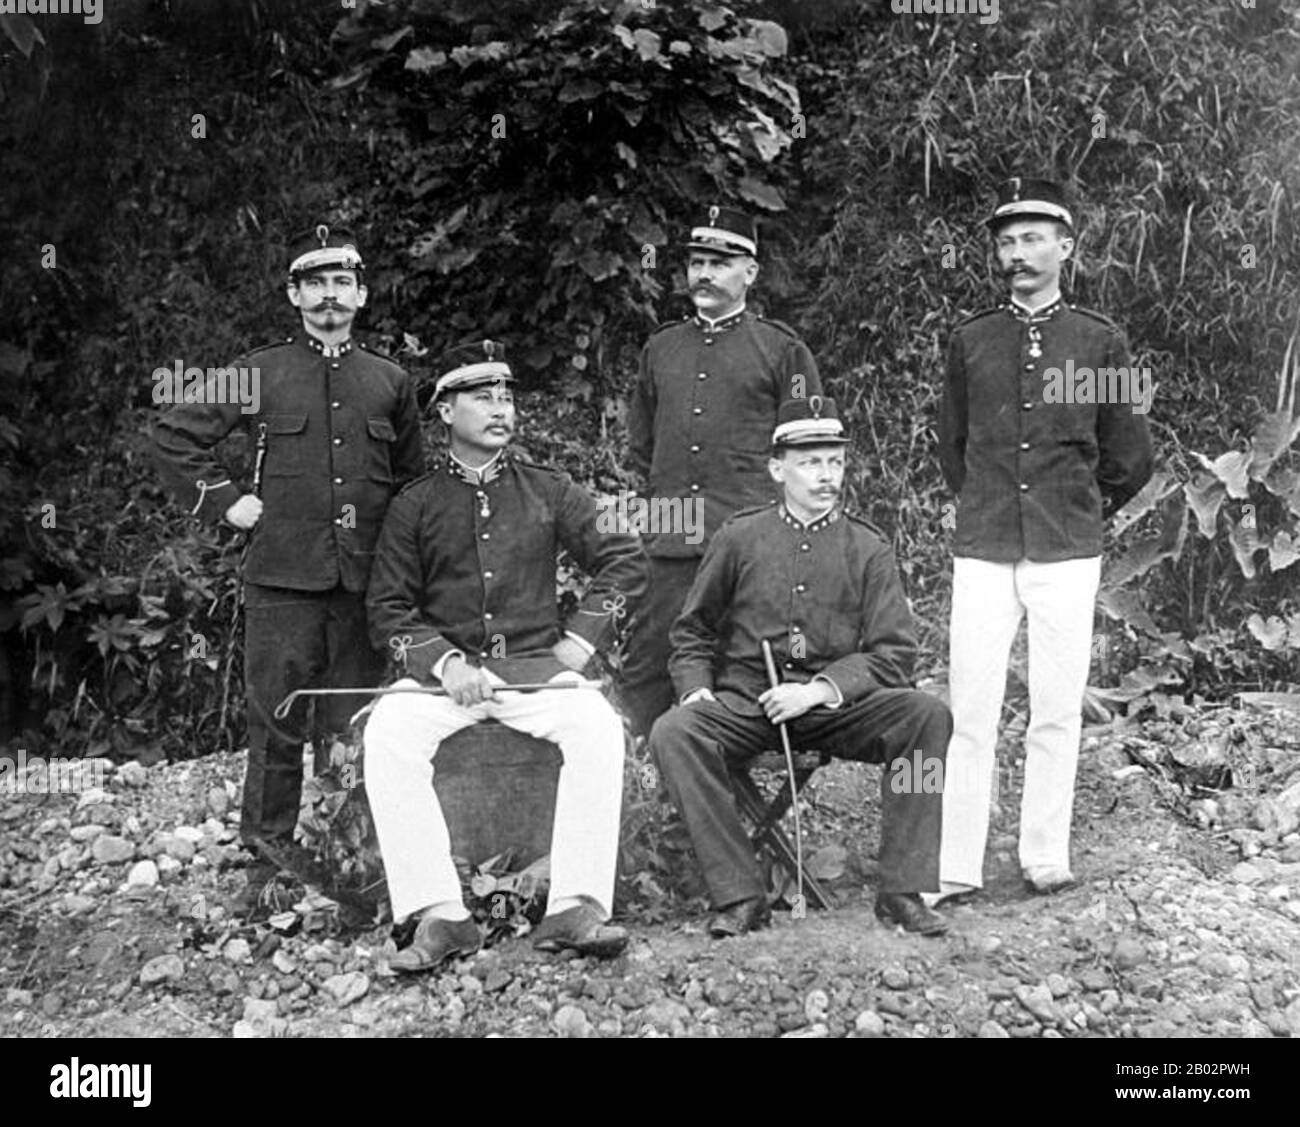 La guerre d'Aceh, également connue sous le nom de guerre néerlandaise ou de guerre Infidale (1873–1914), était un conflit militaire armé entre le Sultanat d'Aceh et les Pays-Bas, déclenché par des discussions entre les représentants d'Aceh et du Royaume-Uni à Singapour au début de 1873. La guerre faisait partie d'une série de conflits à la fin du XIXe siècle qui ont consolidé la domination néerlandaise sur l'Indonésie moderne. Gotfried Coenraad Ernst Frits van Daalen (23 mars 1863 – 22 février 1930) était un lieutenant-général de l'Armée royale néerlandaise des Indes de l'est (Eurasie) qui a servi dans les Indes de l'est. Camionnette Banque D'Images